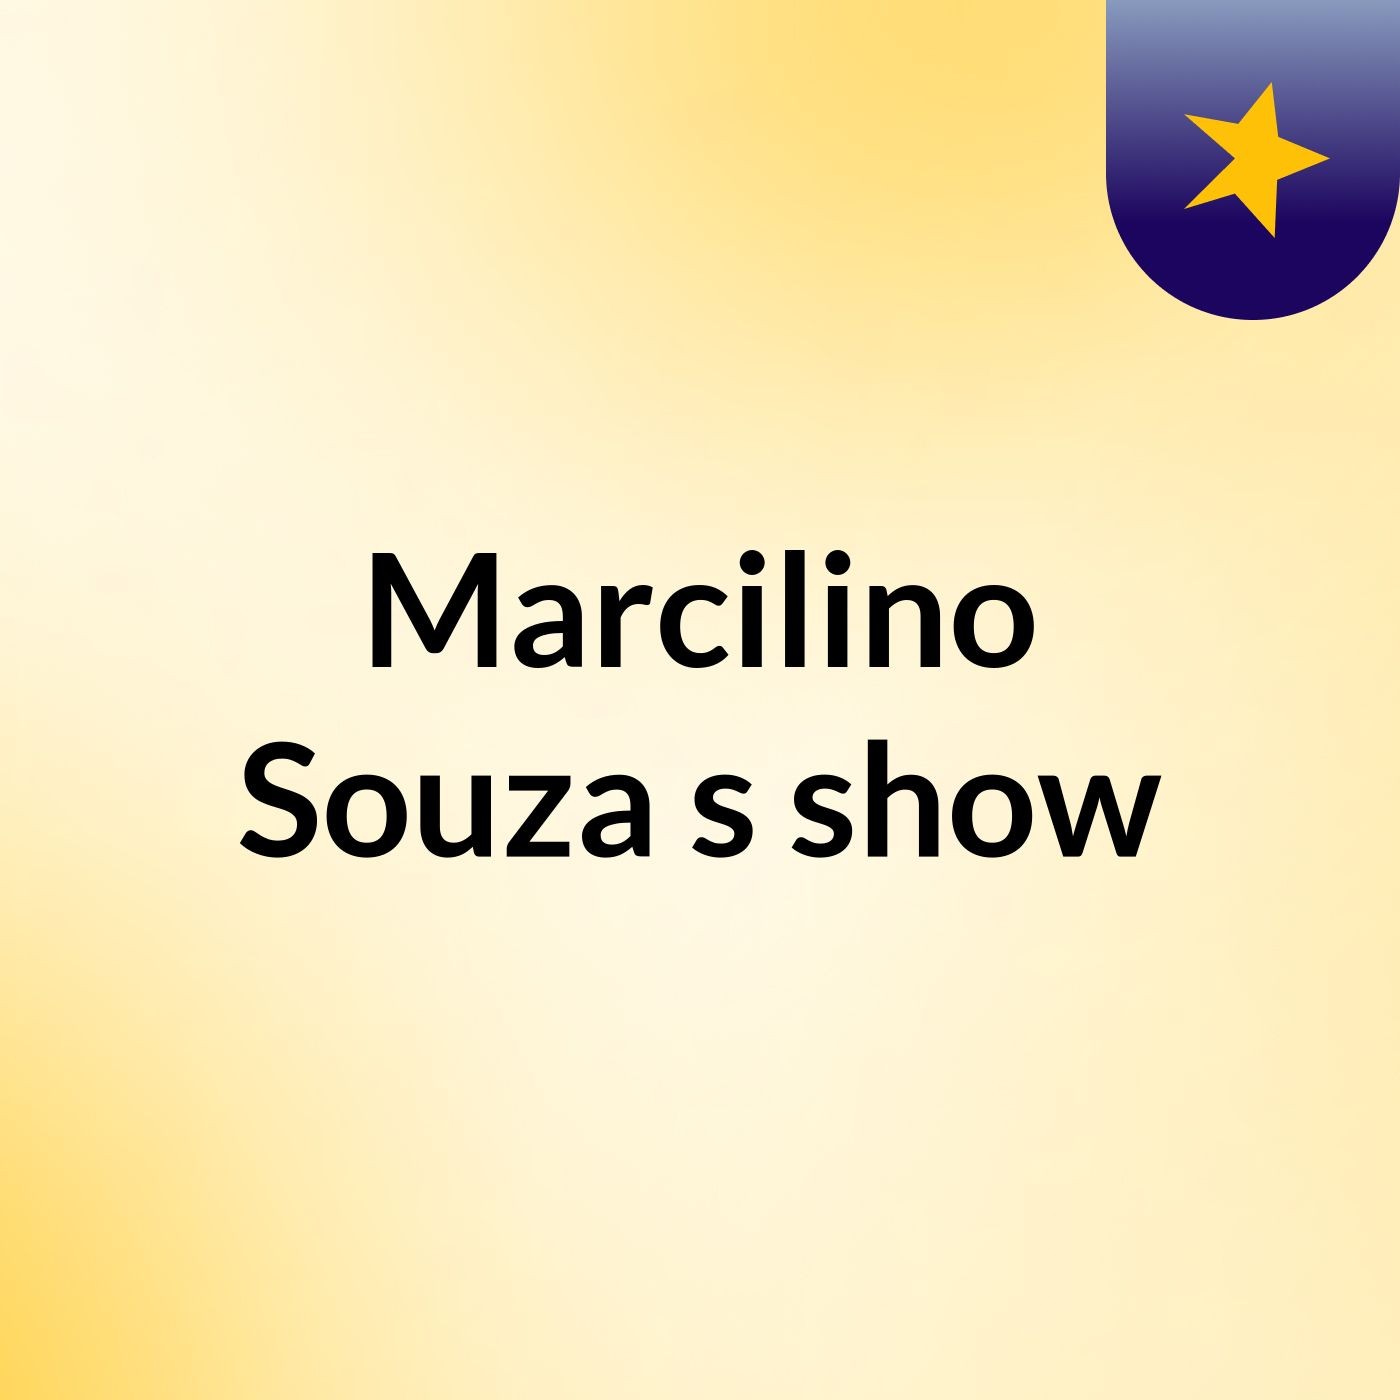 Marcilino Souza's show